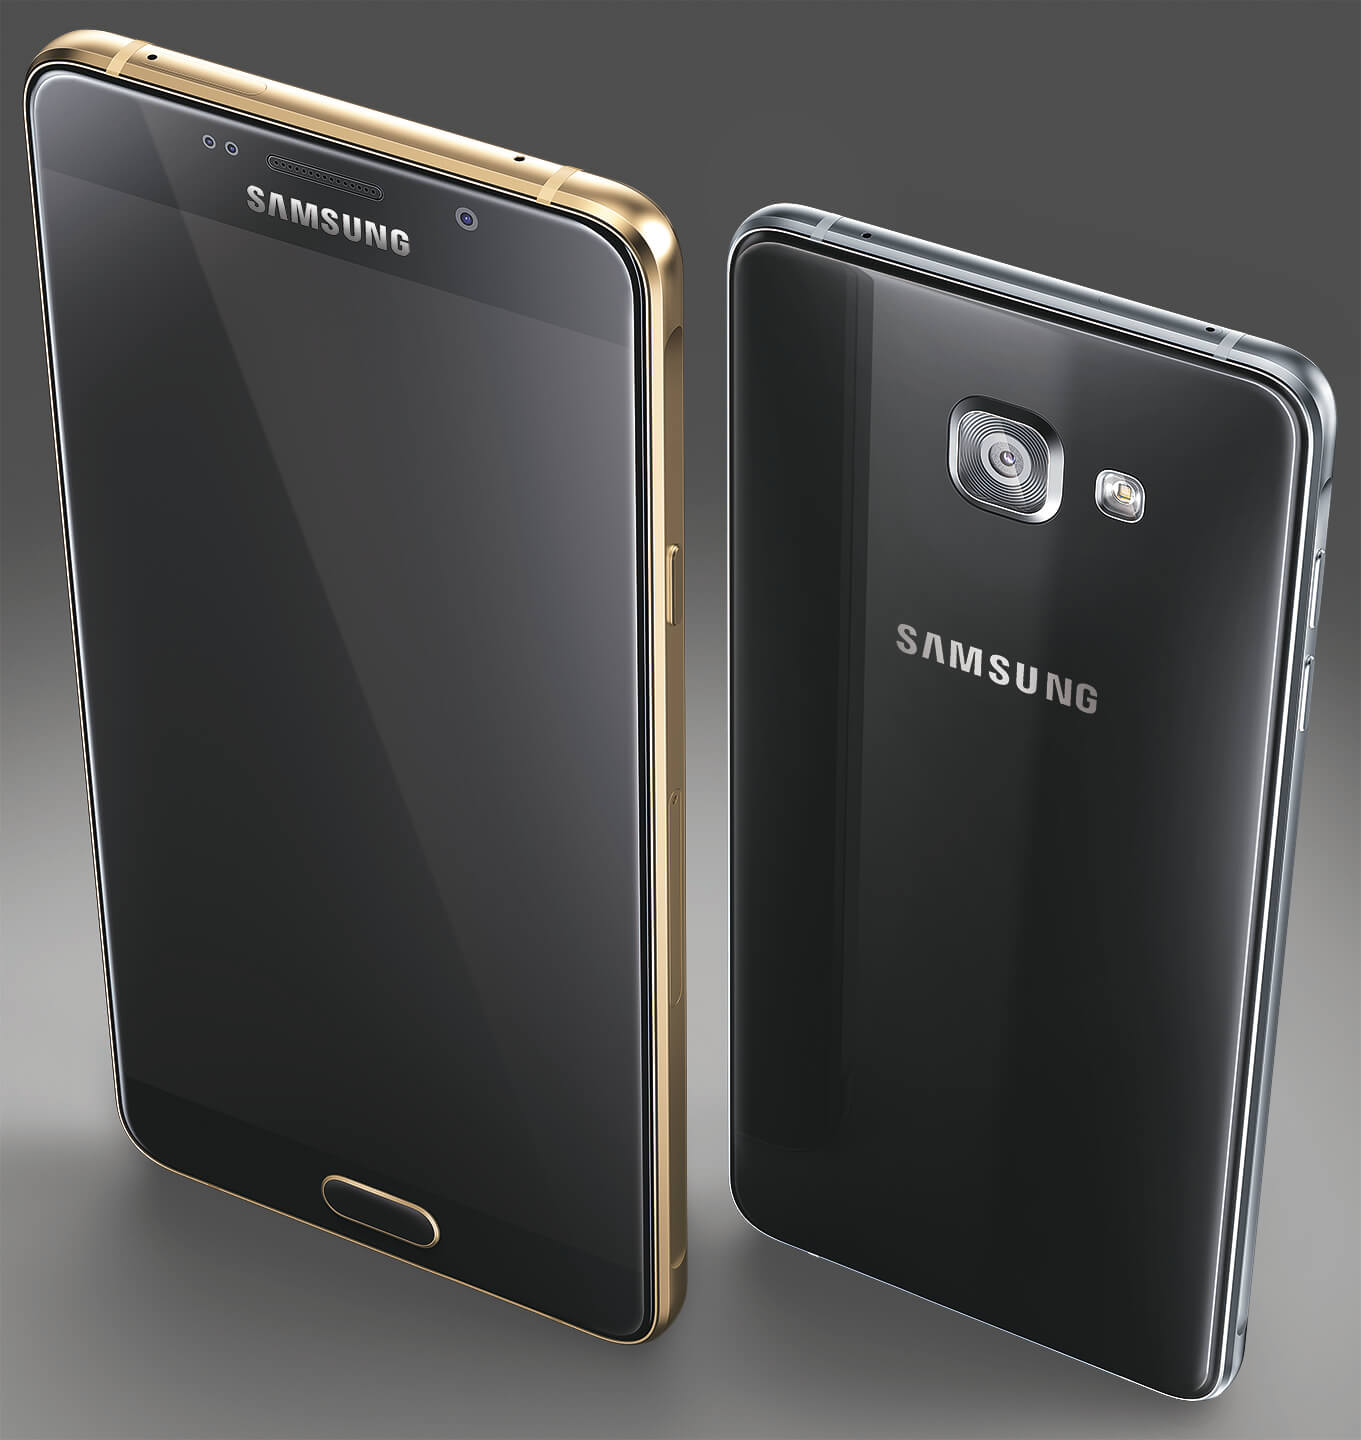 Samsung-Galaxy-A5-2016-and-Galaxy-A7-2016-02.jpg